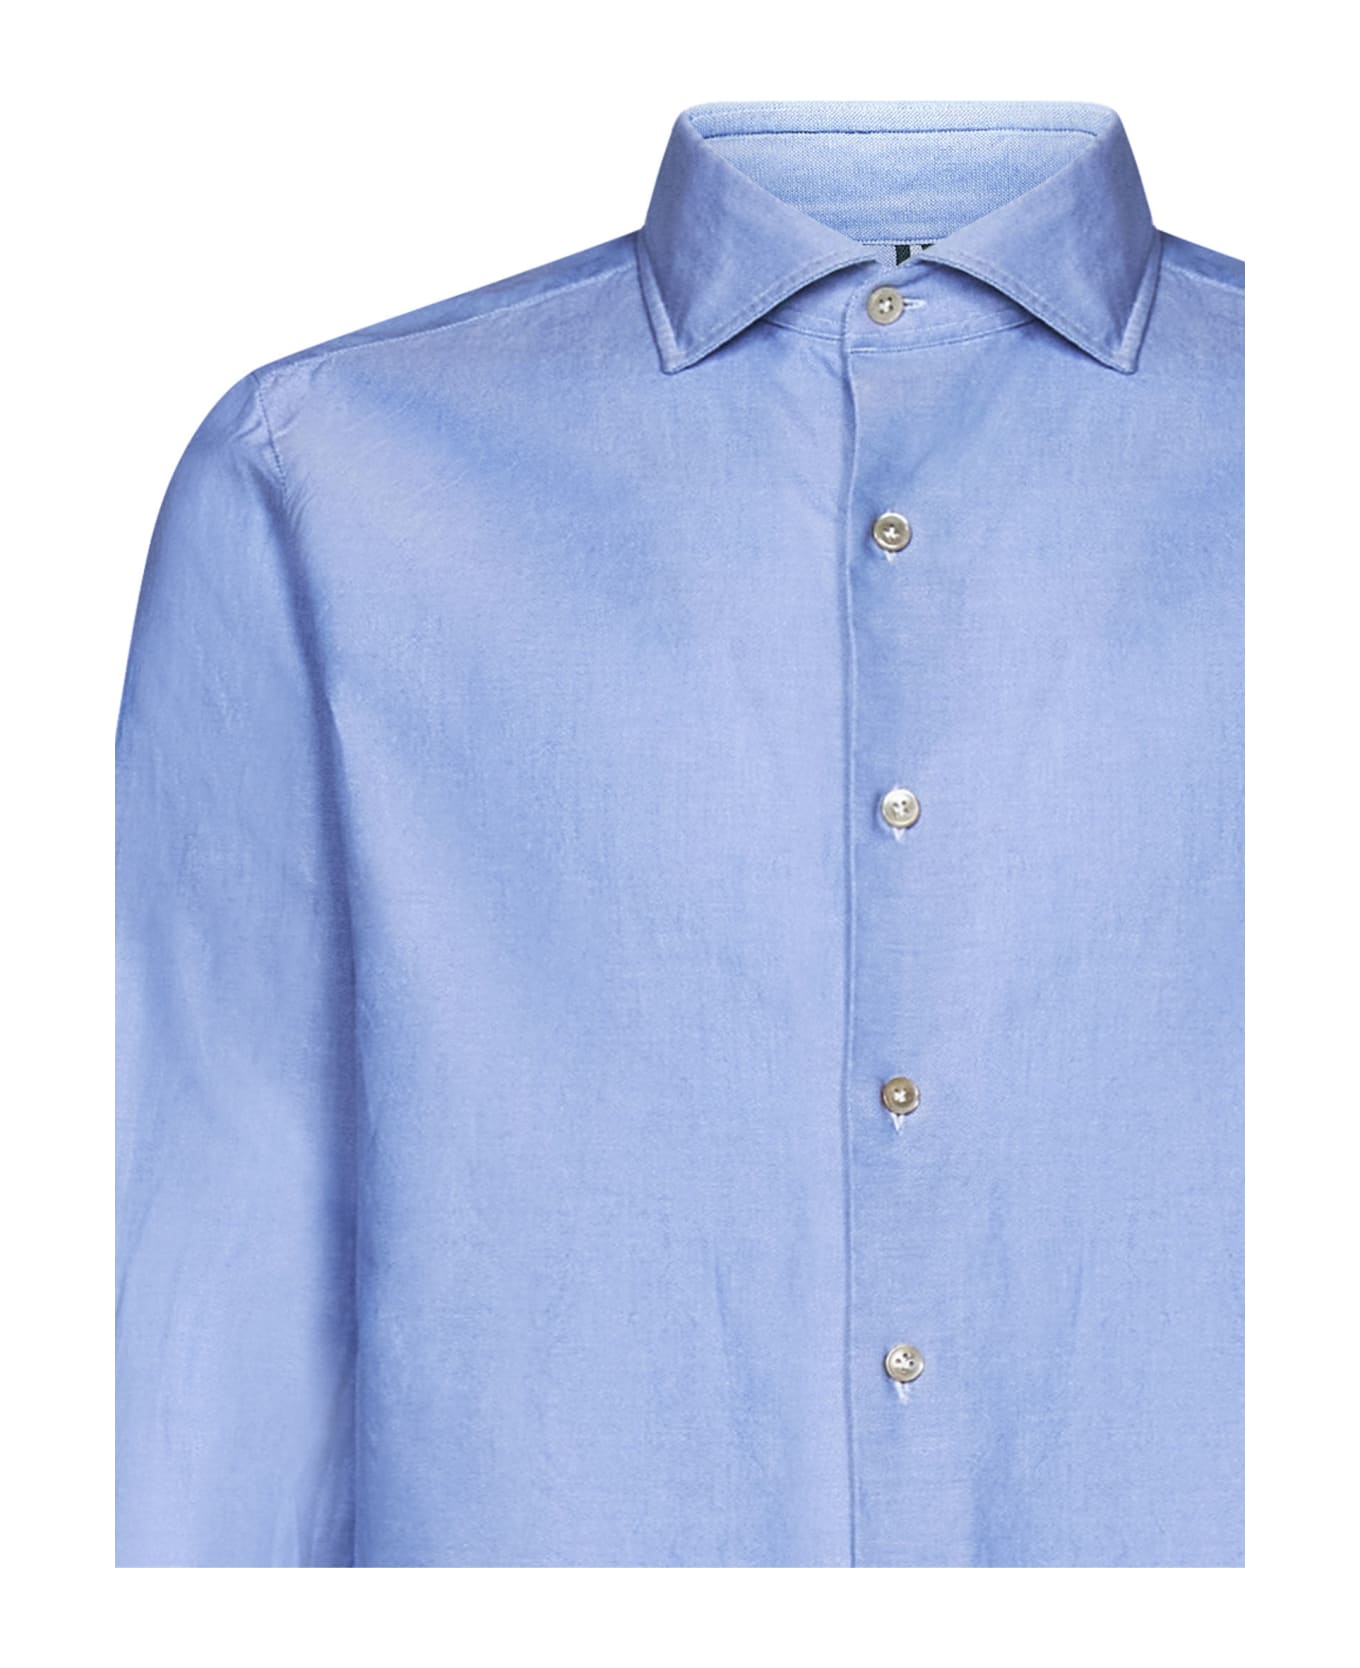 Luigi Borrelli Shirt - Light blue